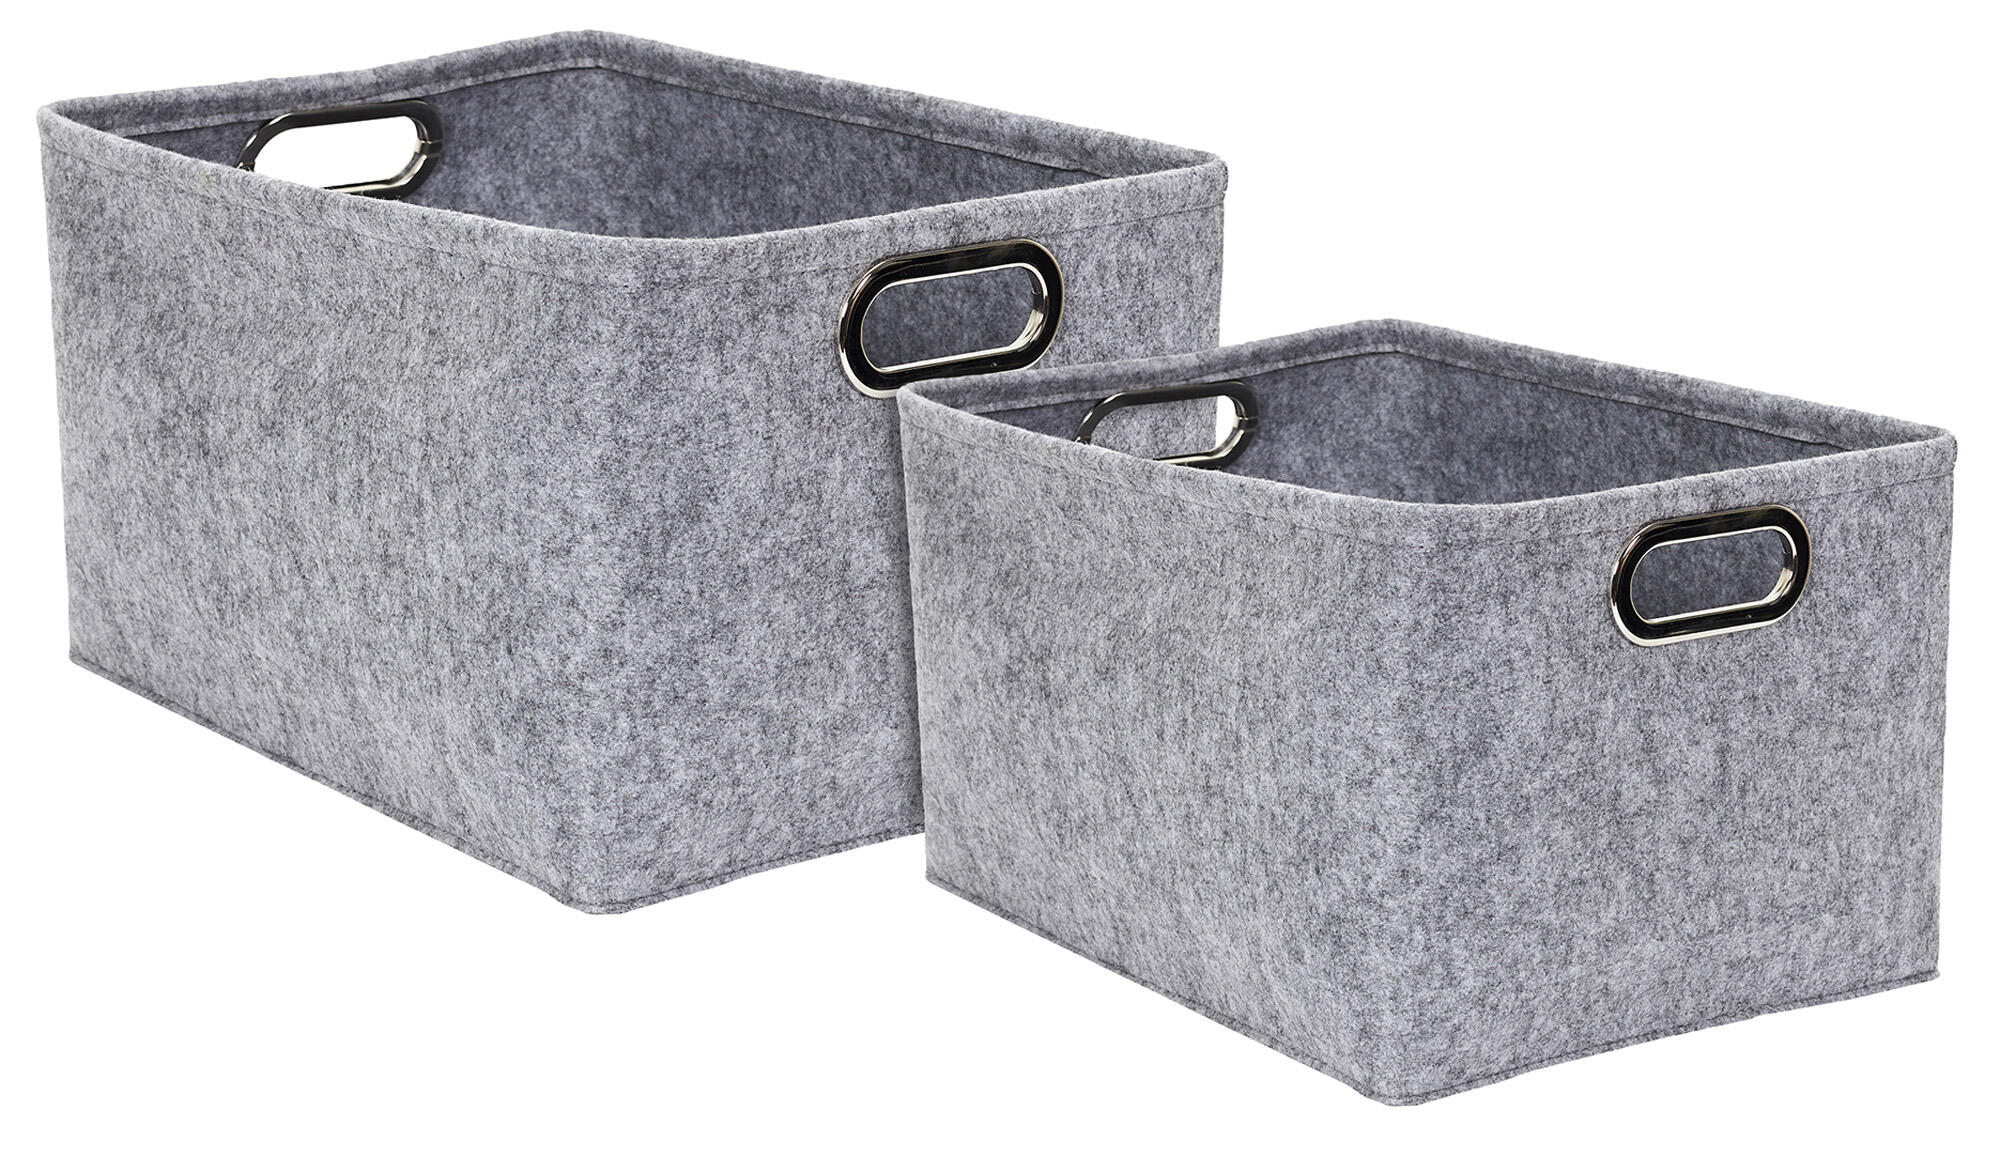 Set 2 cestas de poliéster color gris de de 30x40x24 cm